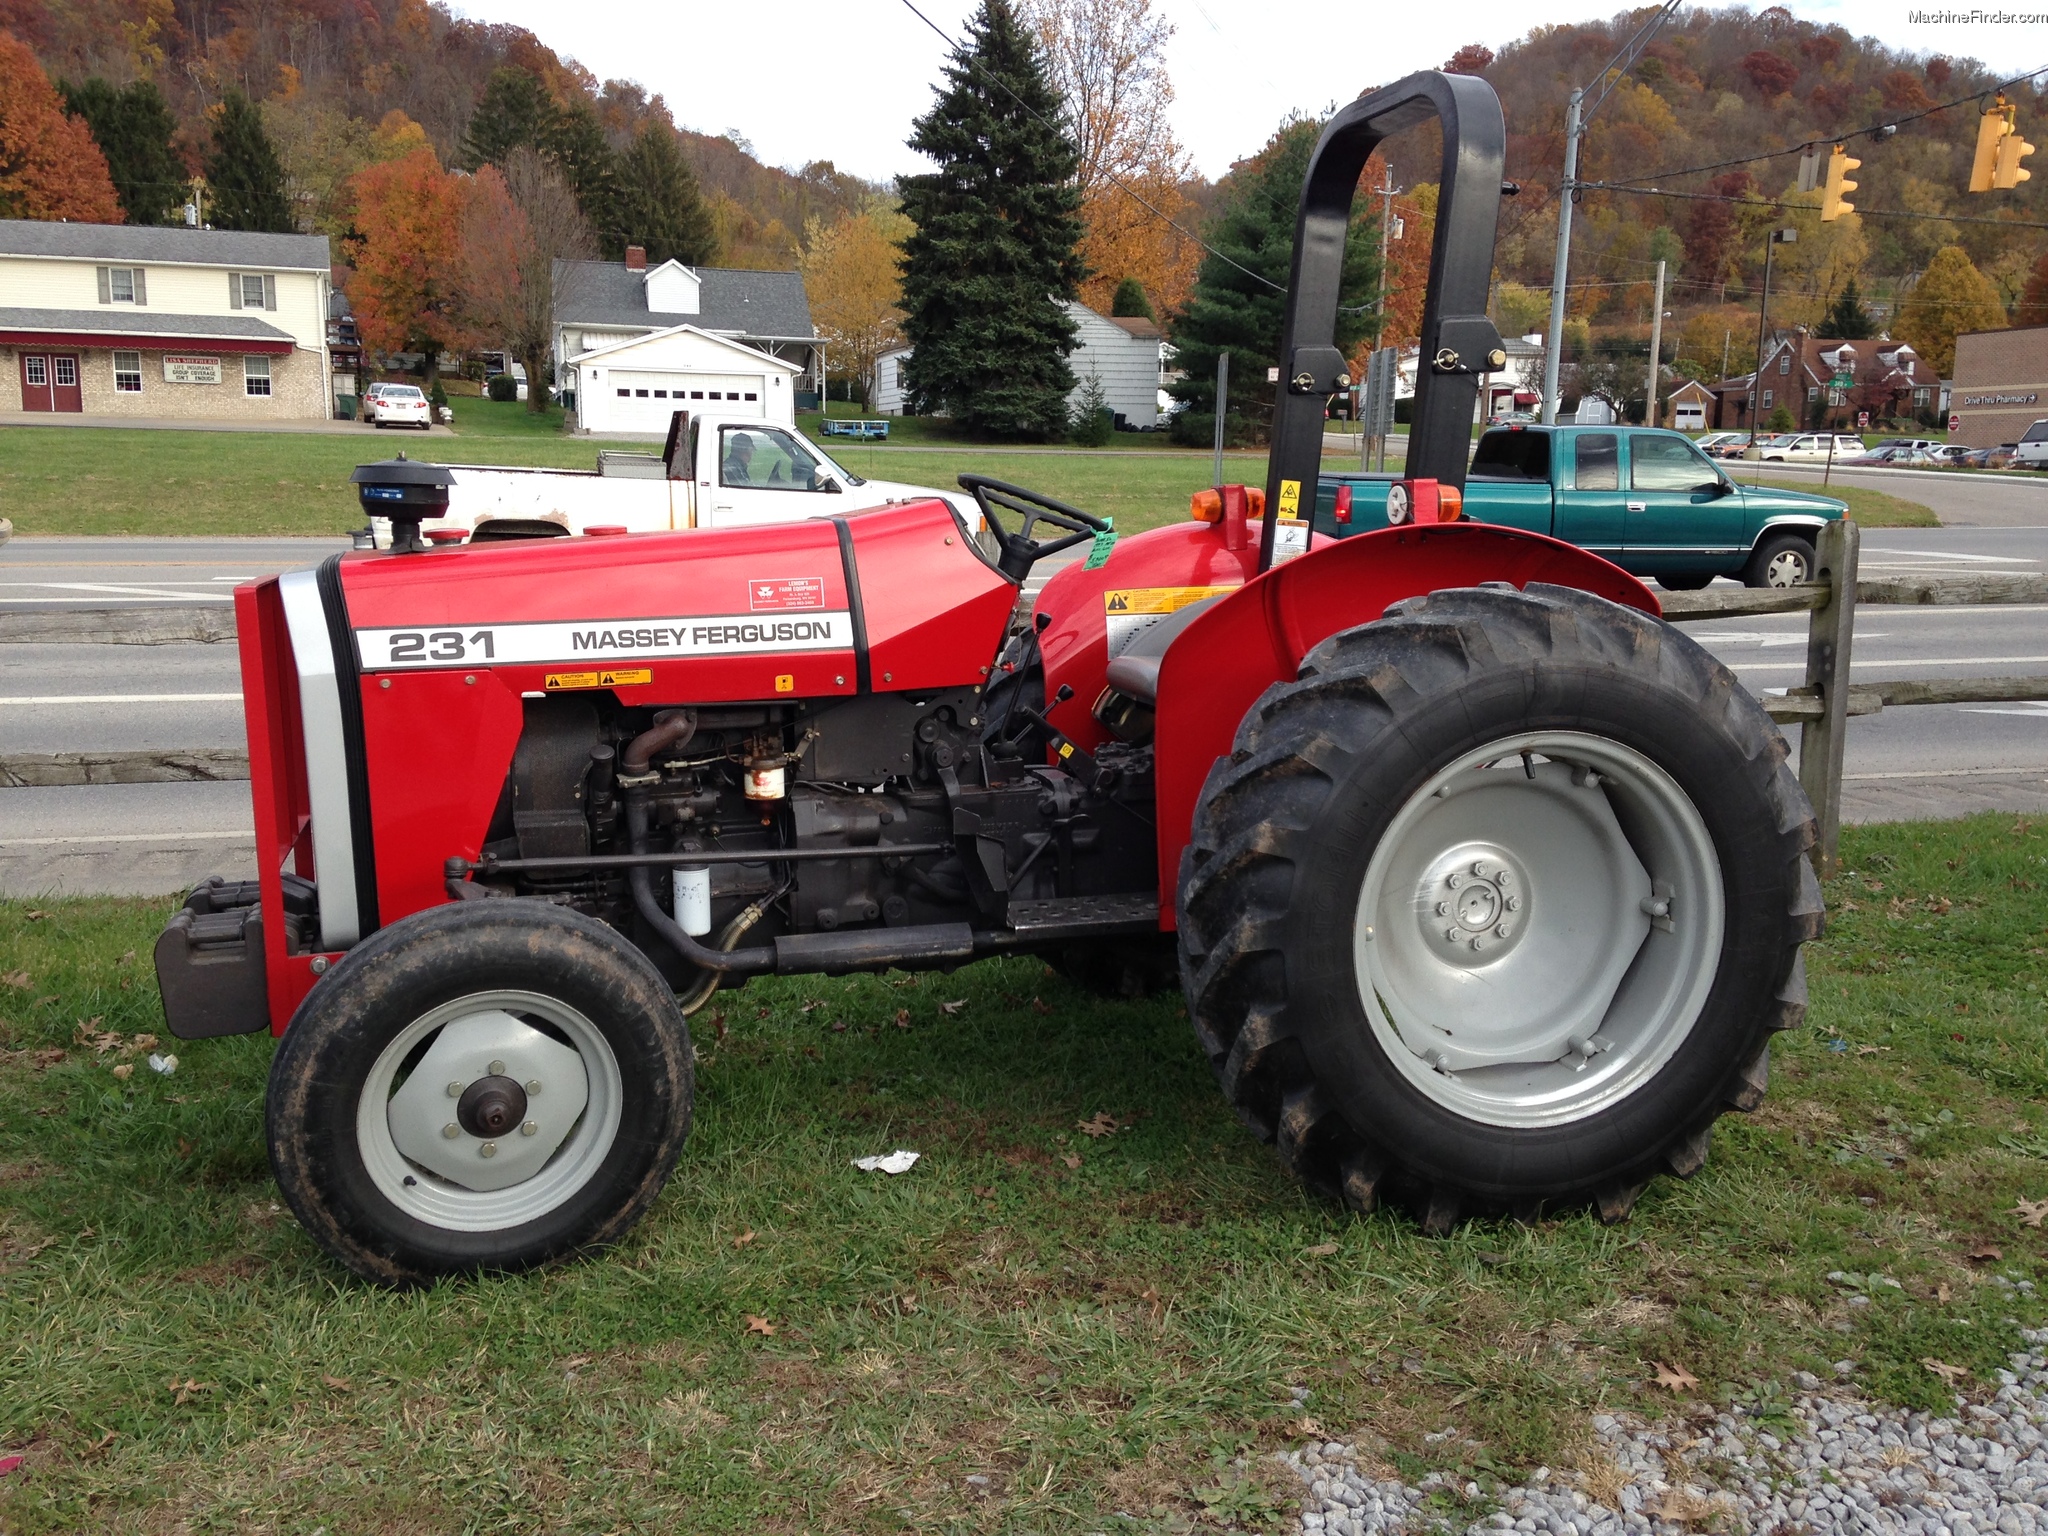 Massey - Ferguson 231 Tractors - Compact (1-40hp.) - John Deere ...